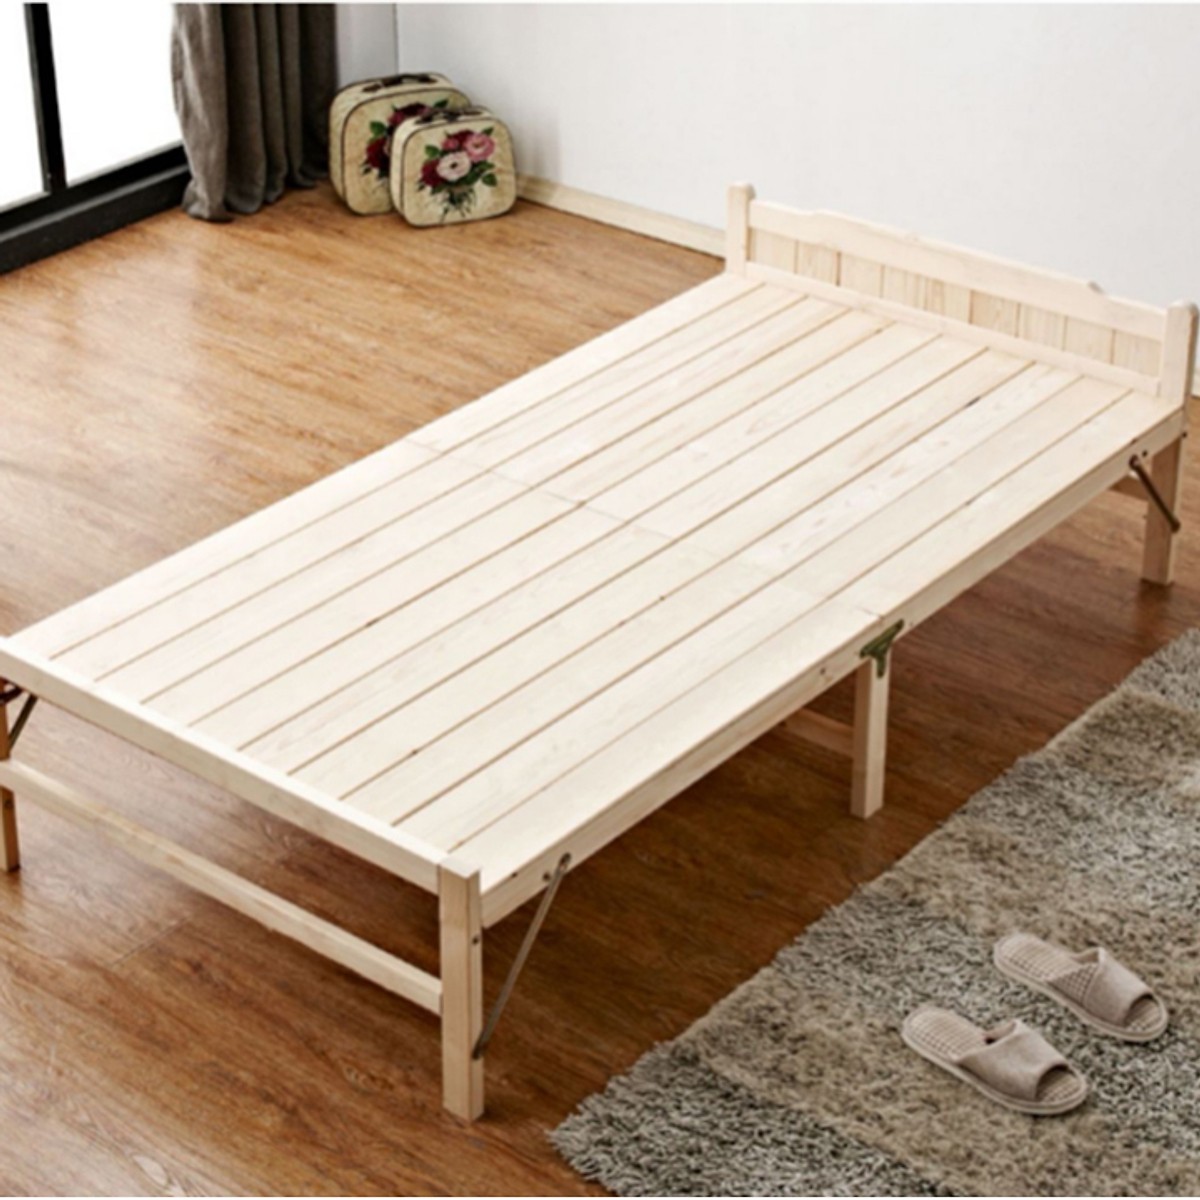 Giường xếp gỗ thông gấp gọn 150cm, 120cm, 100cm, 80cm, 60cm x 195cm - Giường gấp gọn thông minh